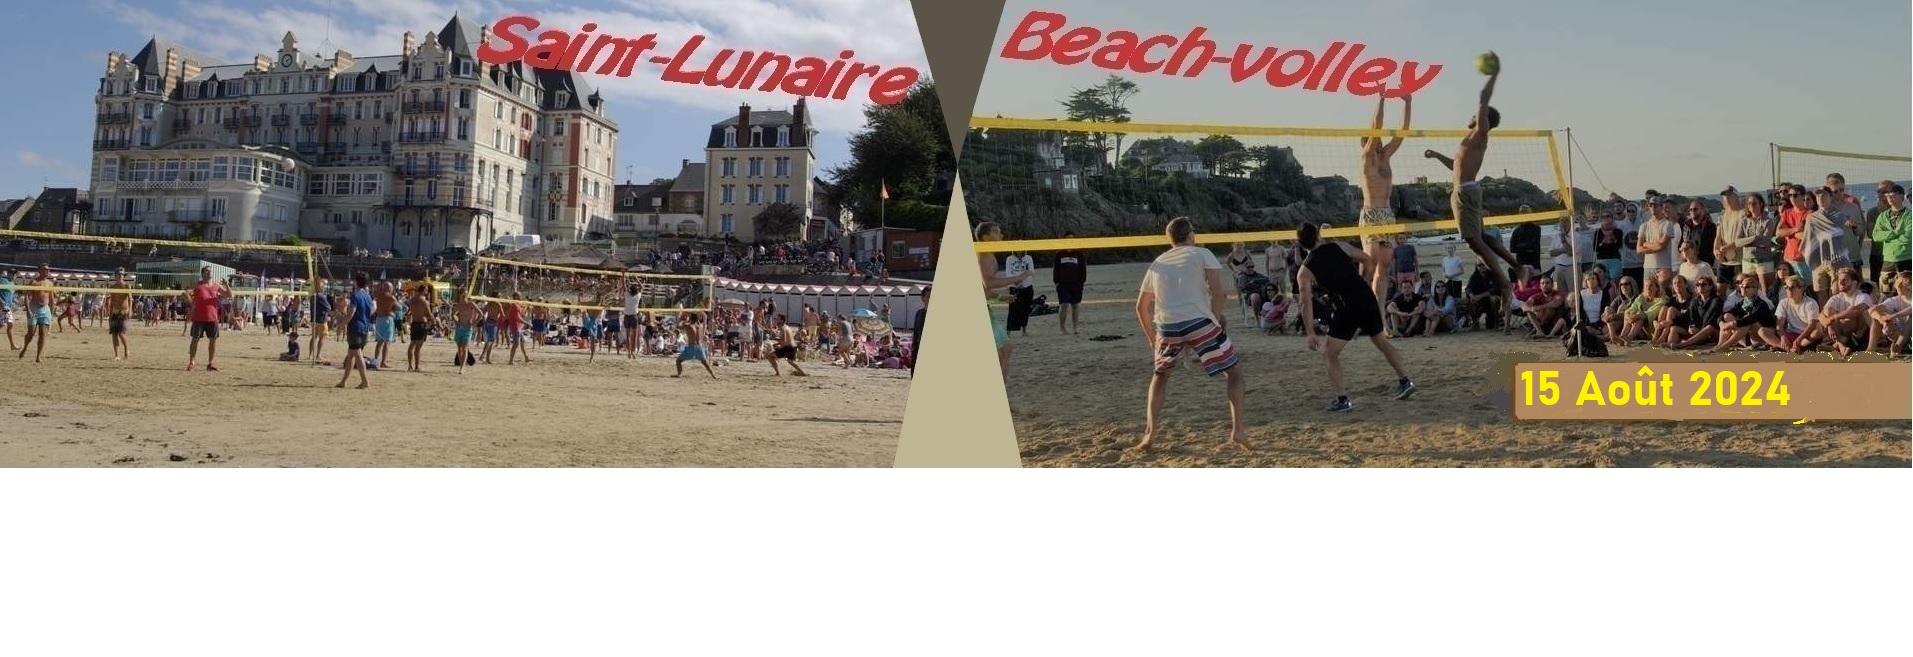 Tournoi de beach-volley de Saint-Lunaire